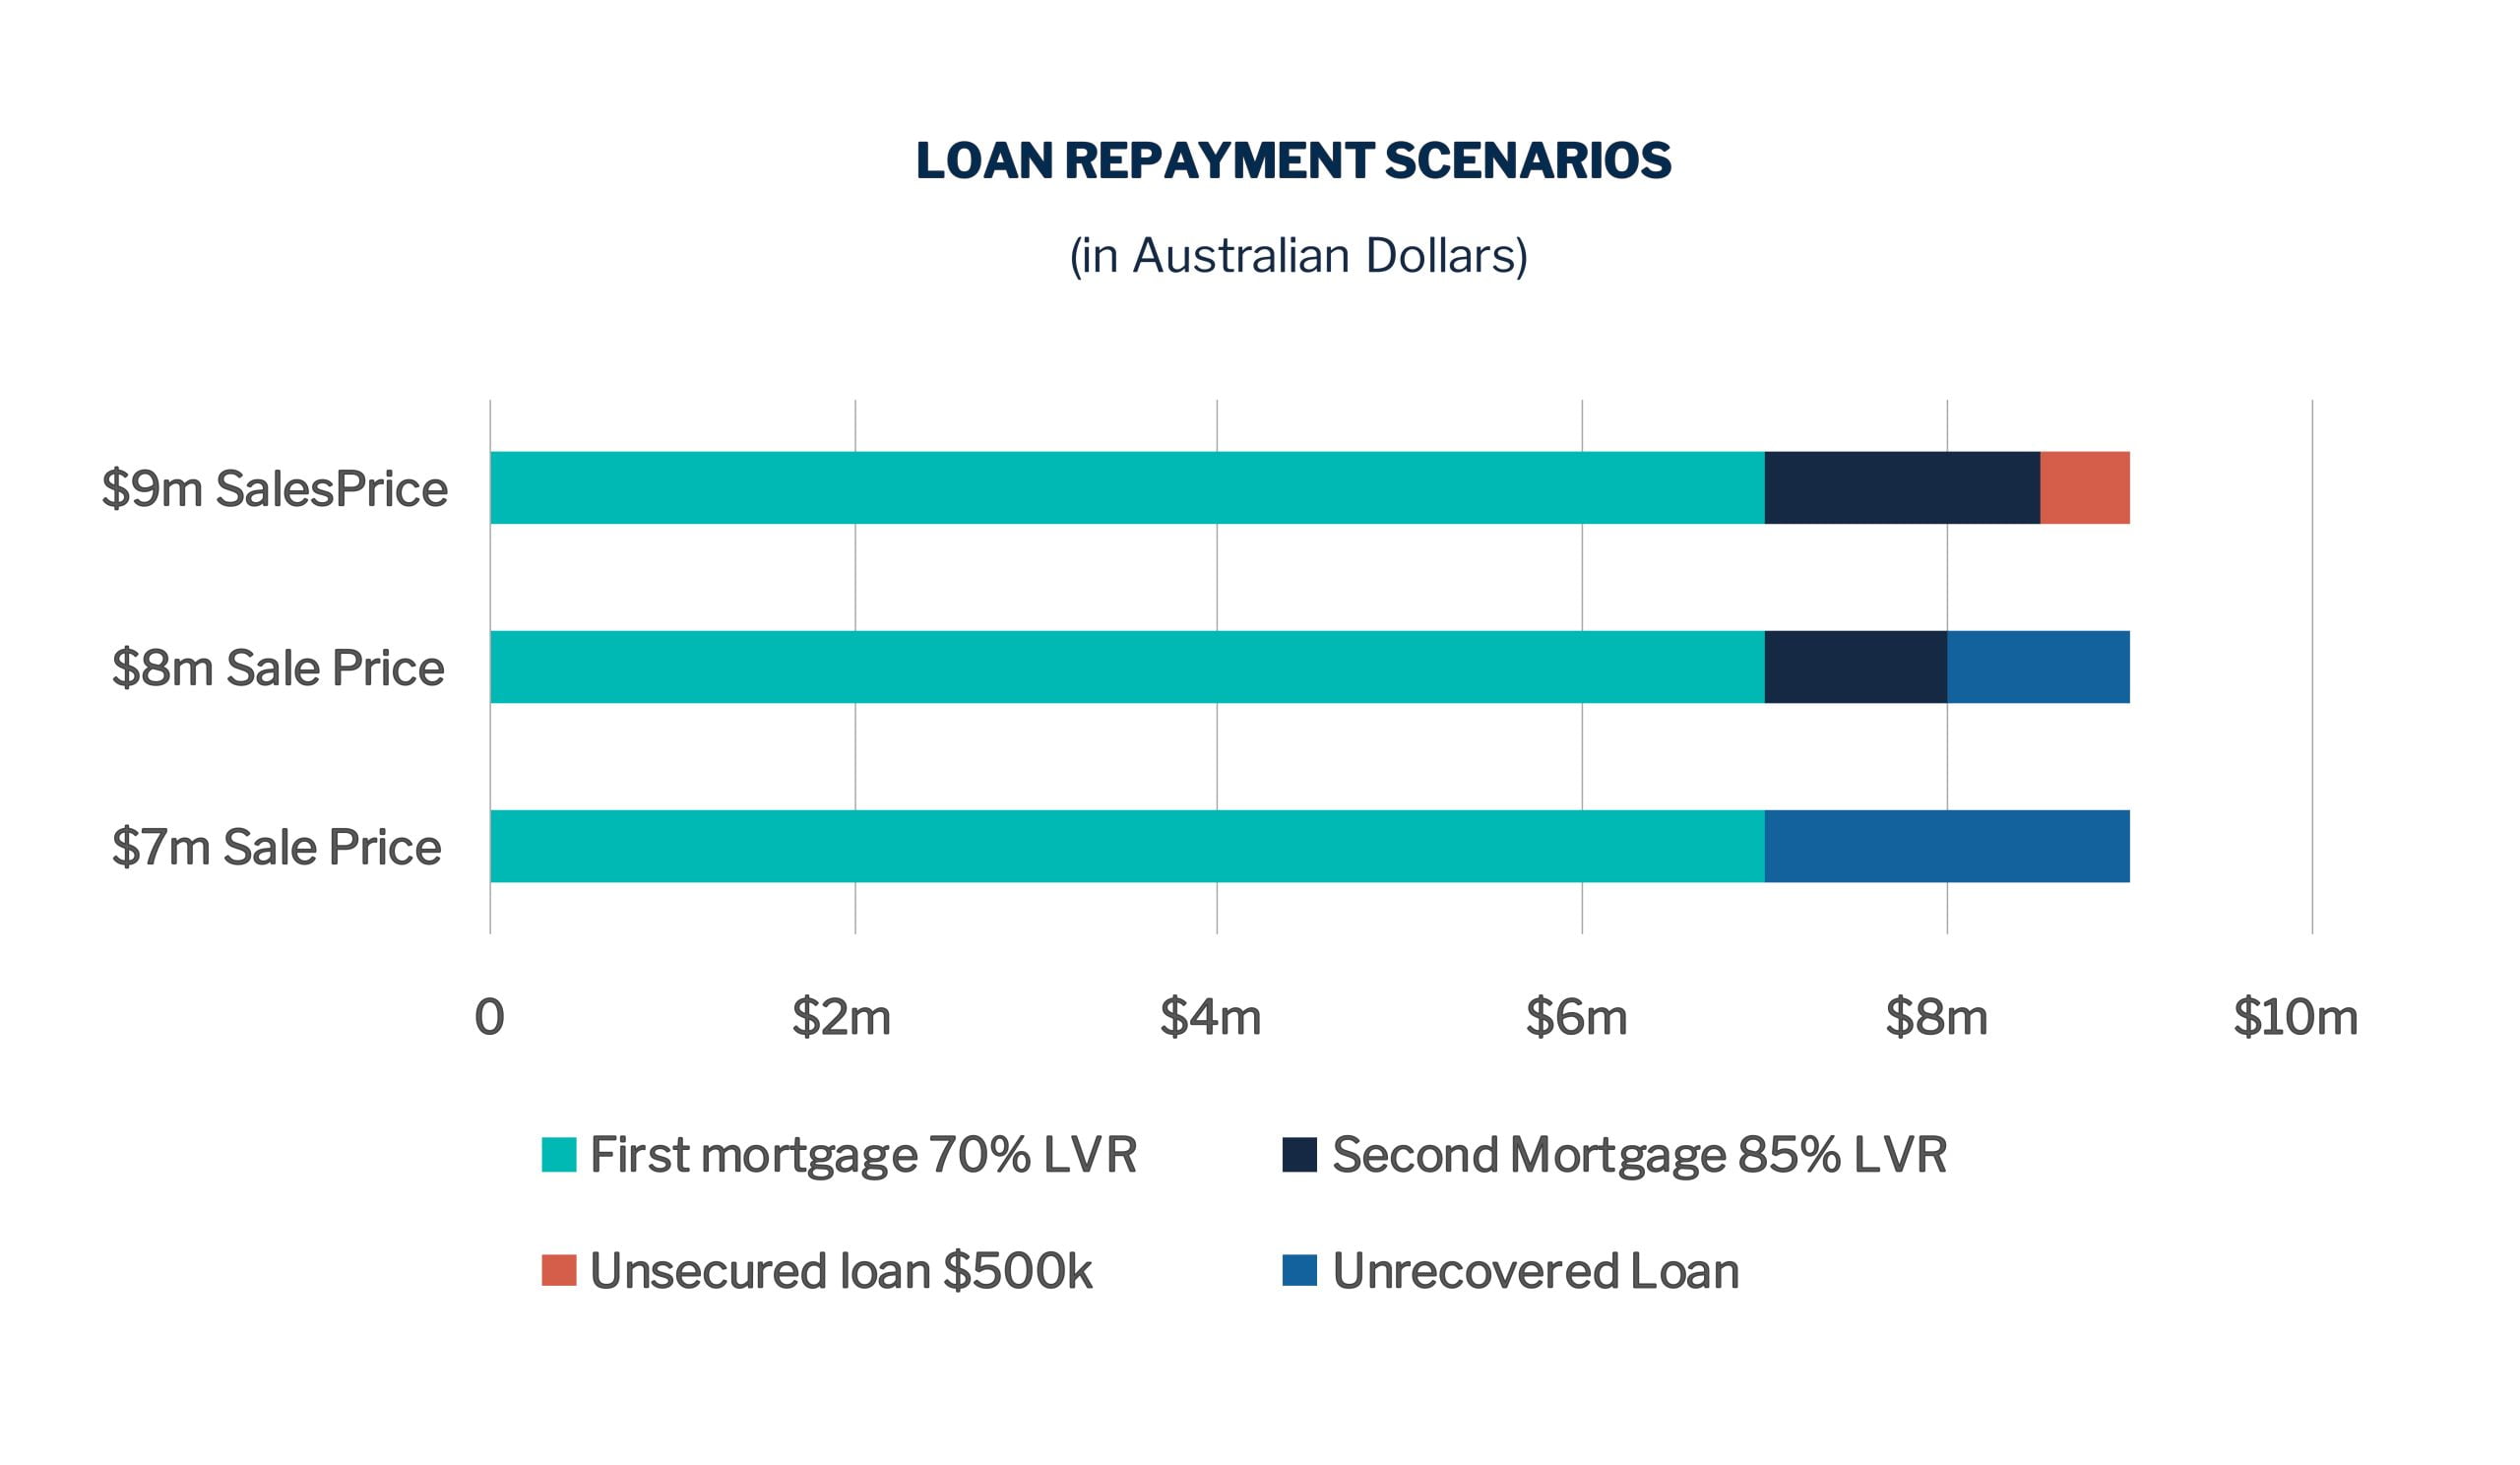 Loan Repayment Scenarios in AUD